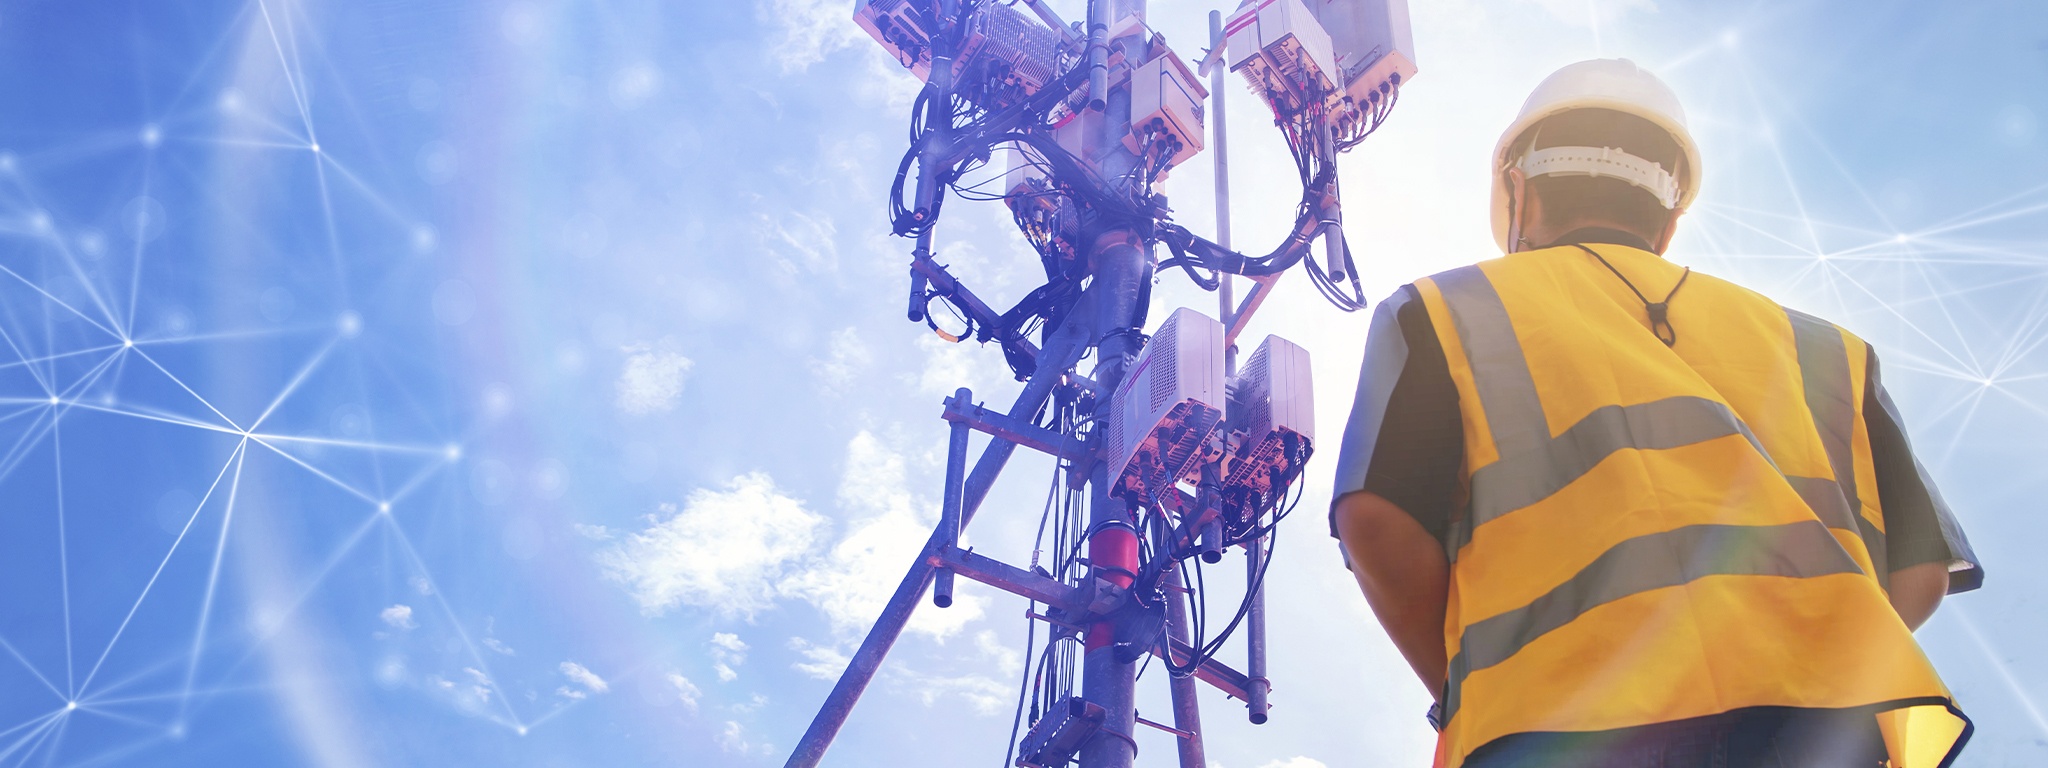 önünde bir telekomünikasyon kulesi ile sahada çalışan kasklı bir mühendisin arkadan görünümü